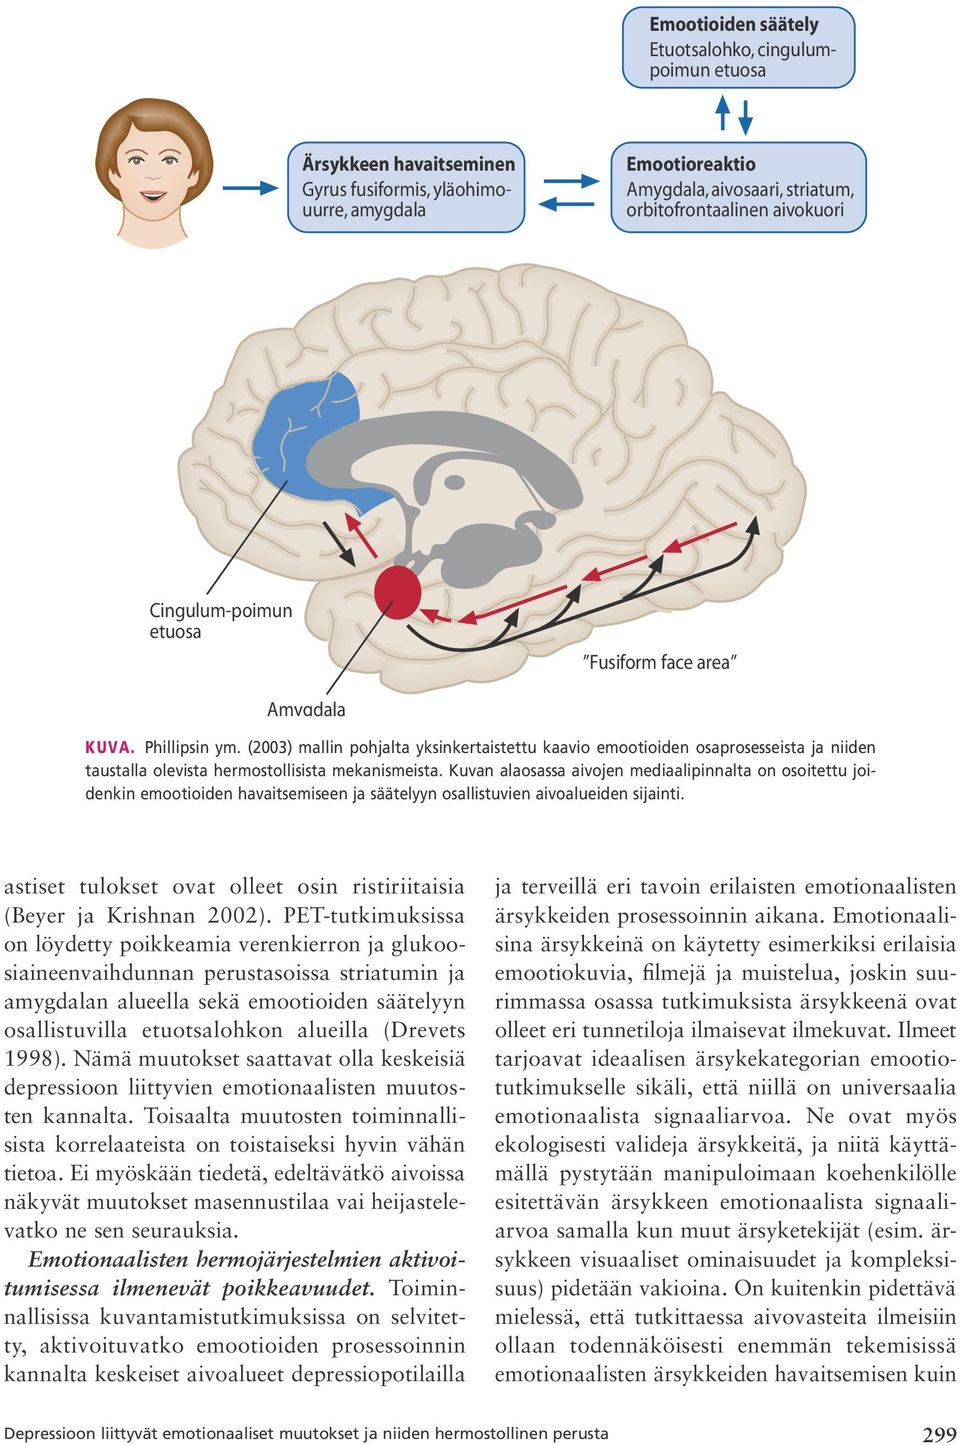 (2003) mallin pohjalta yksinkertaistettu kaavio emootioiden osaprosesseista ja niiden taustalla olevista hermostollisista mekanismeista.